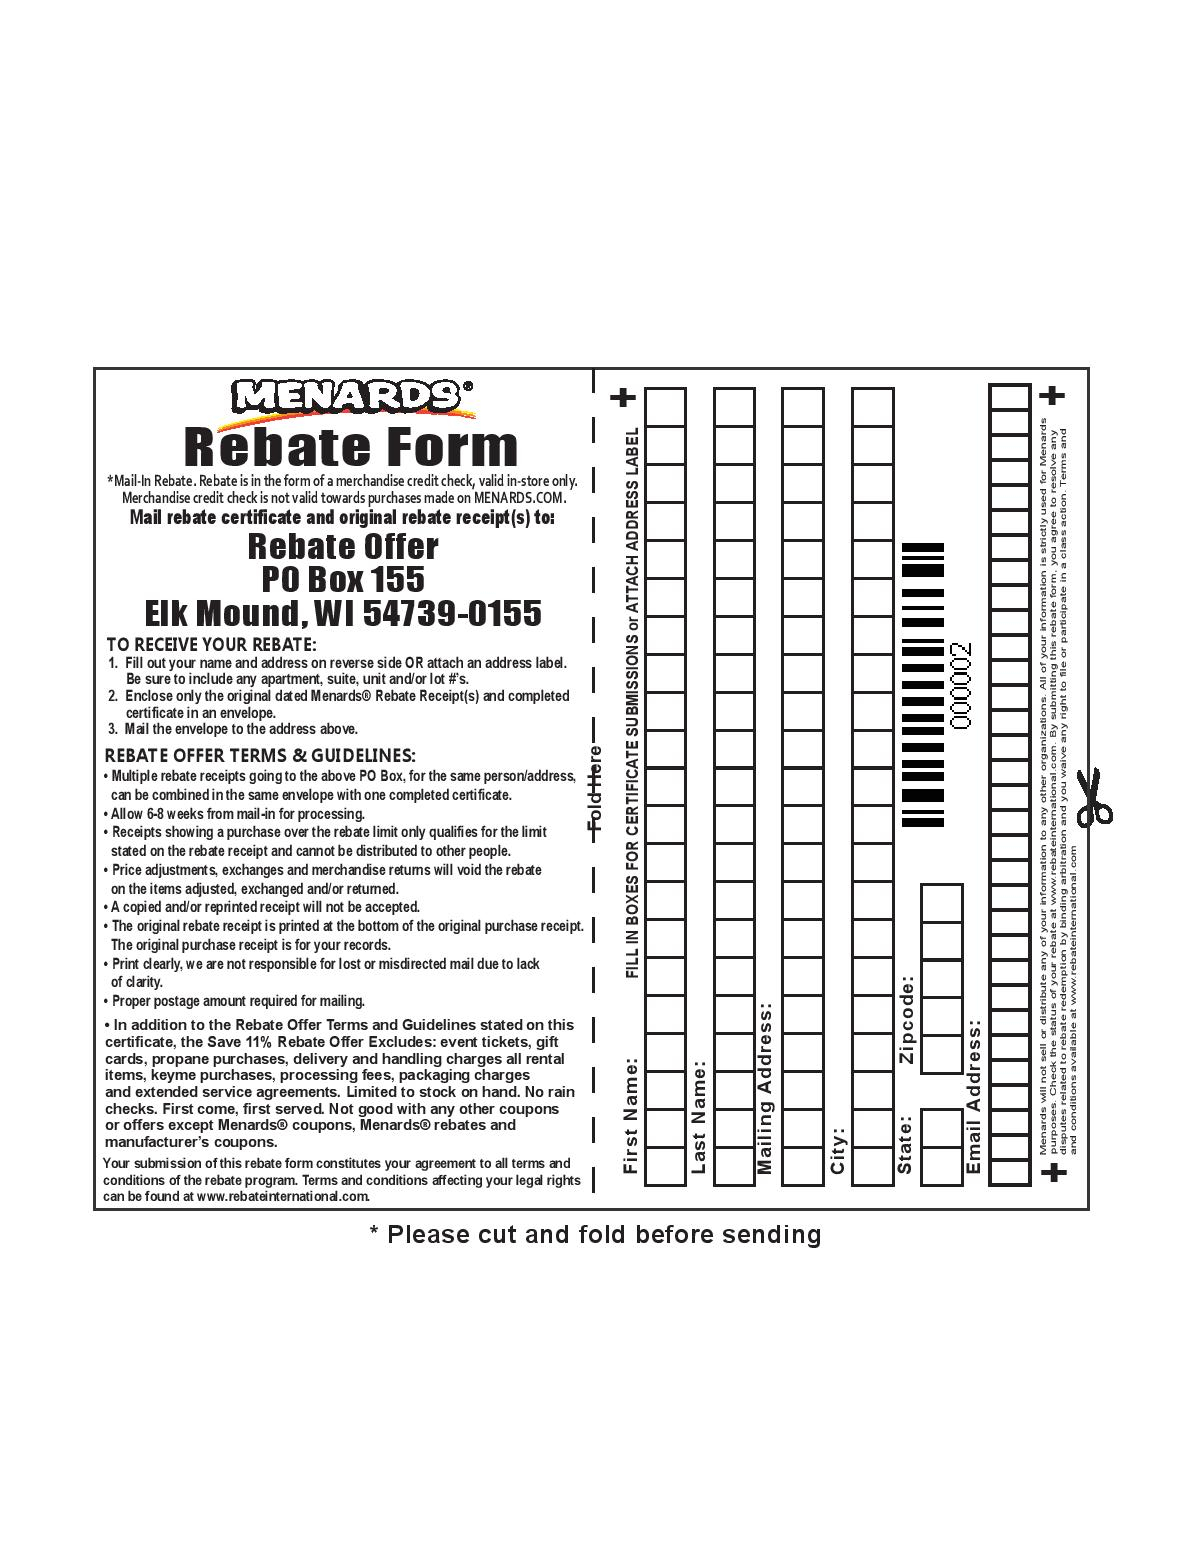 printable-menards-rebate-form-2022-menardsrebate-form